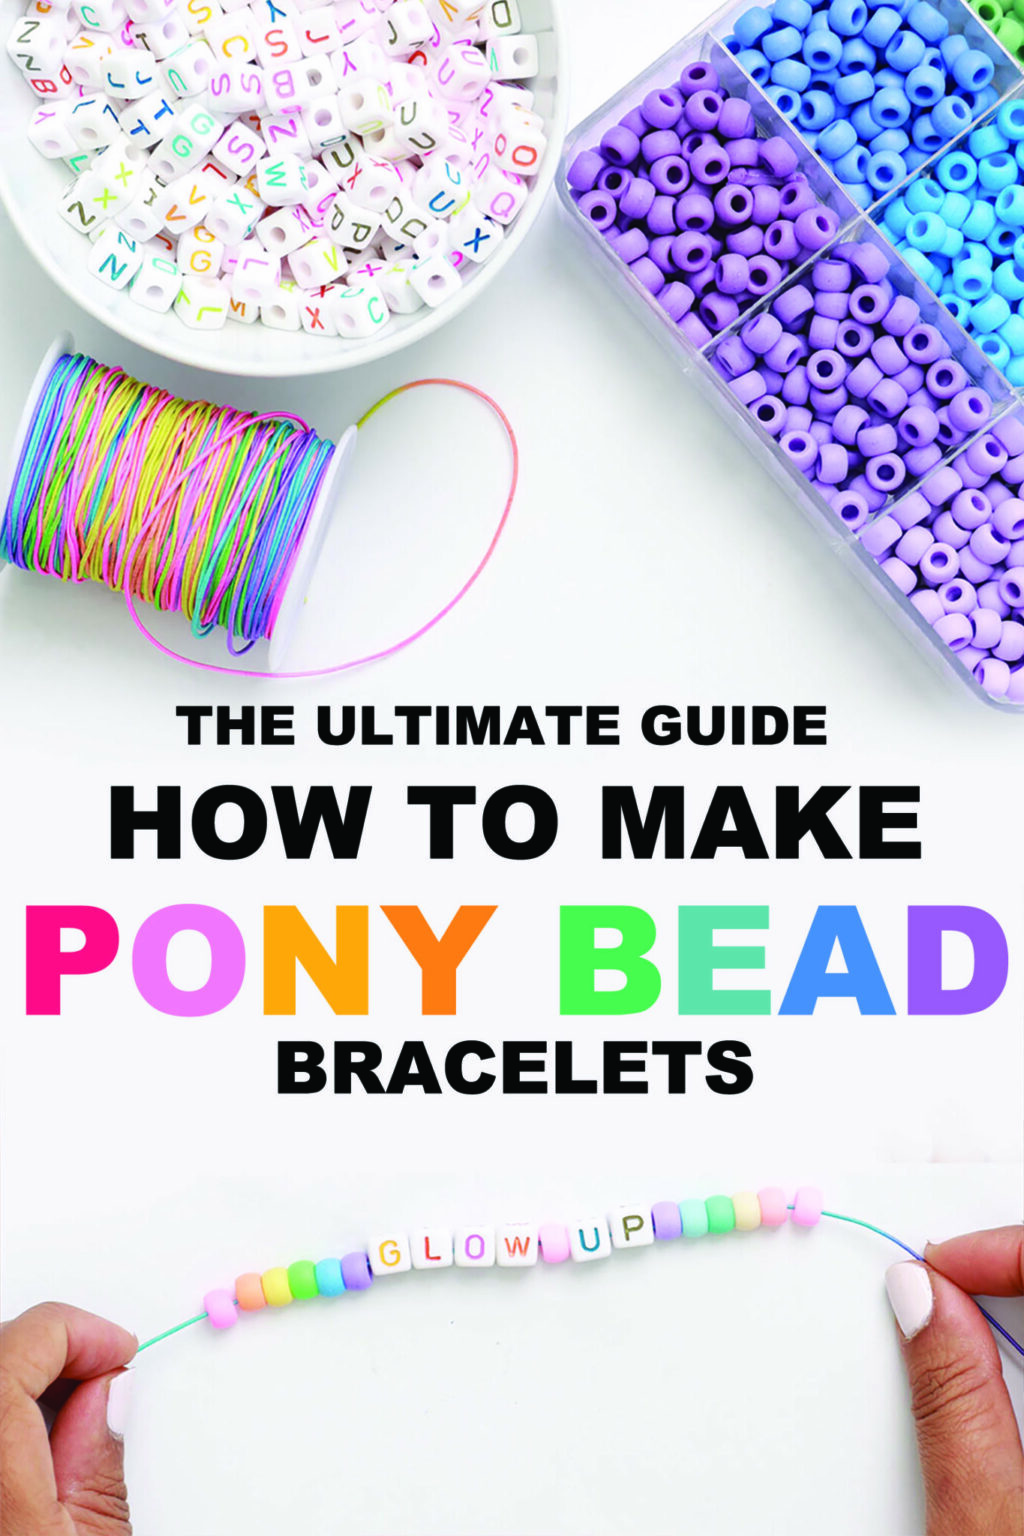 How to Make a Pony Bead Bracelet: 9 Easy Steps